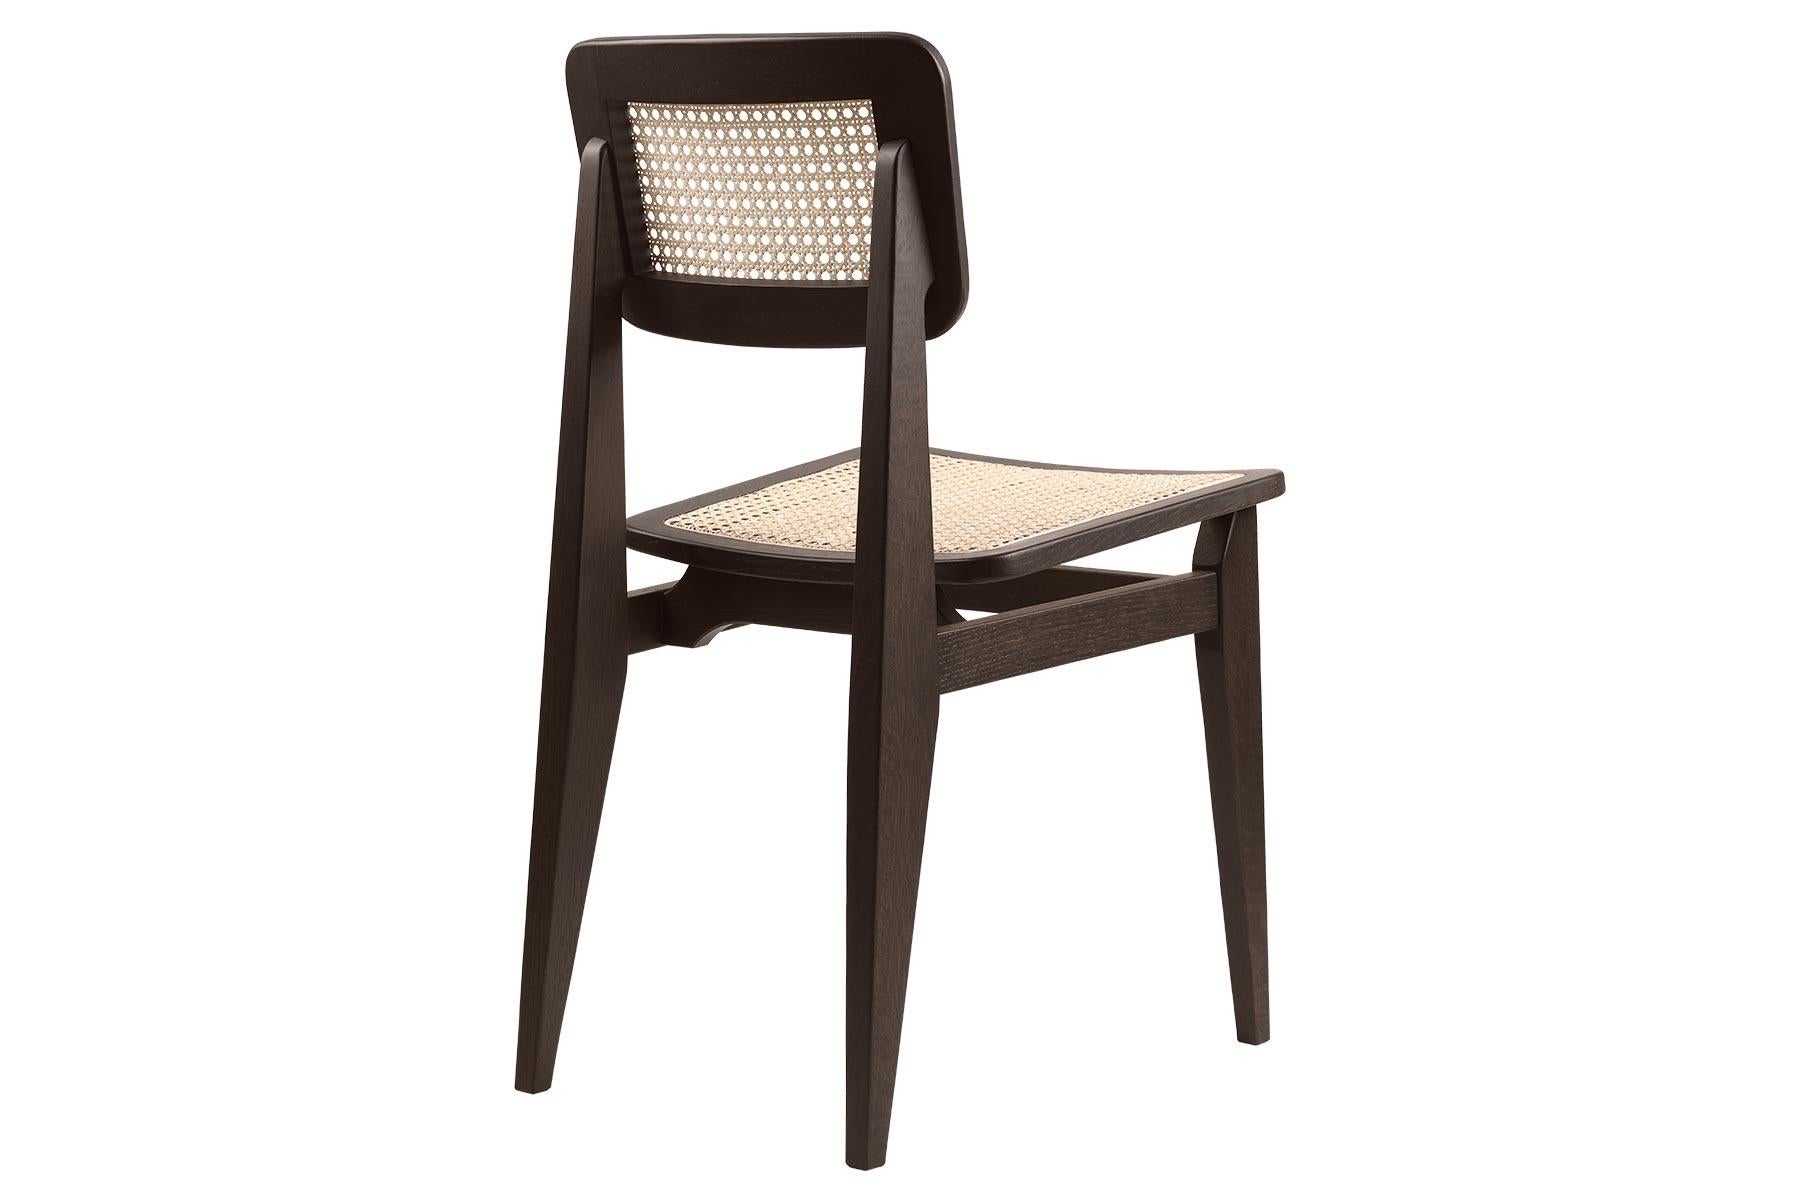 L'une des pièces les plus connues de Marcel Gascoin, la chaise de salle à manger A.I.C., a été conçue en 1947. La chaise représente non seulement la puissance esthétique et pratique des designs de Gascoin, mais aussi la conscience sociale dont il a